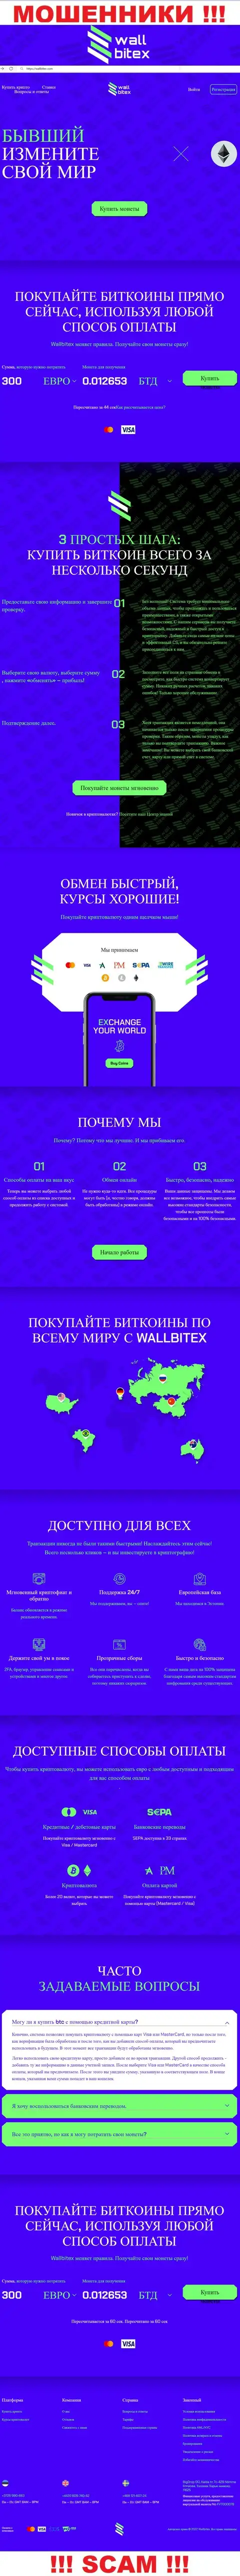 WallBitex Com - это официальный информационный портал незаконно действующей компании Валл Битекс